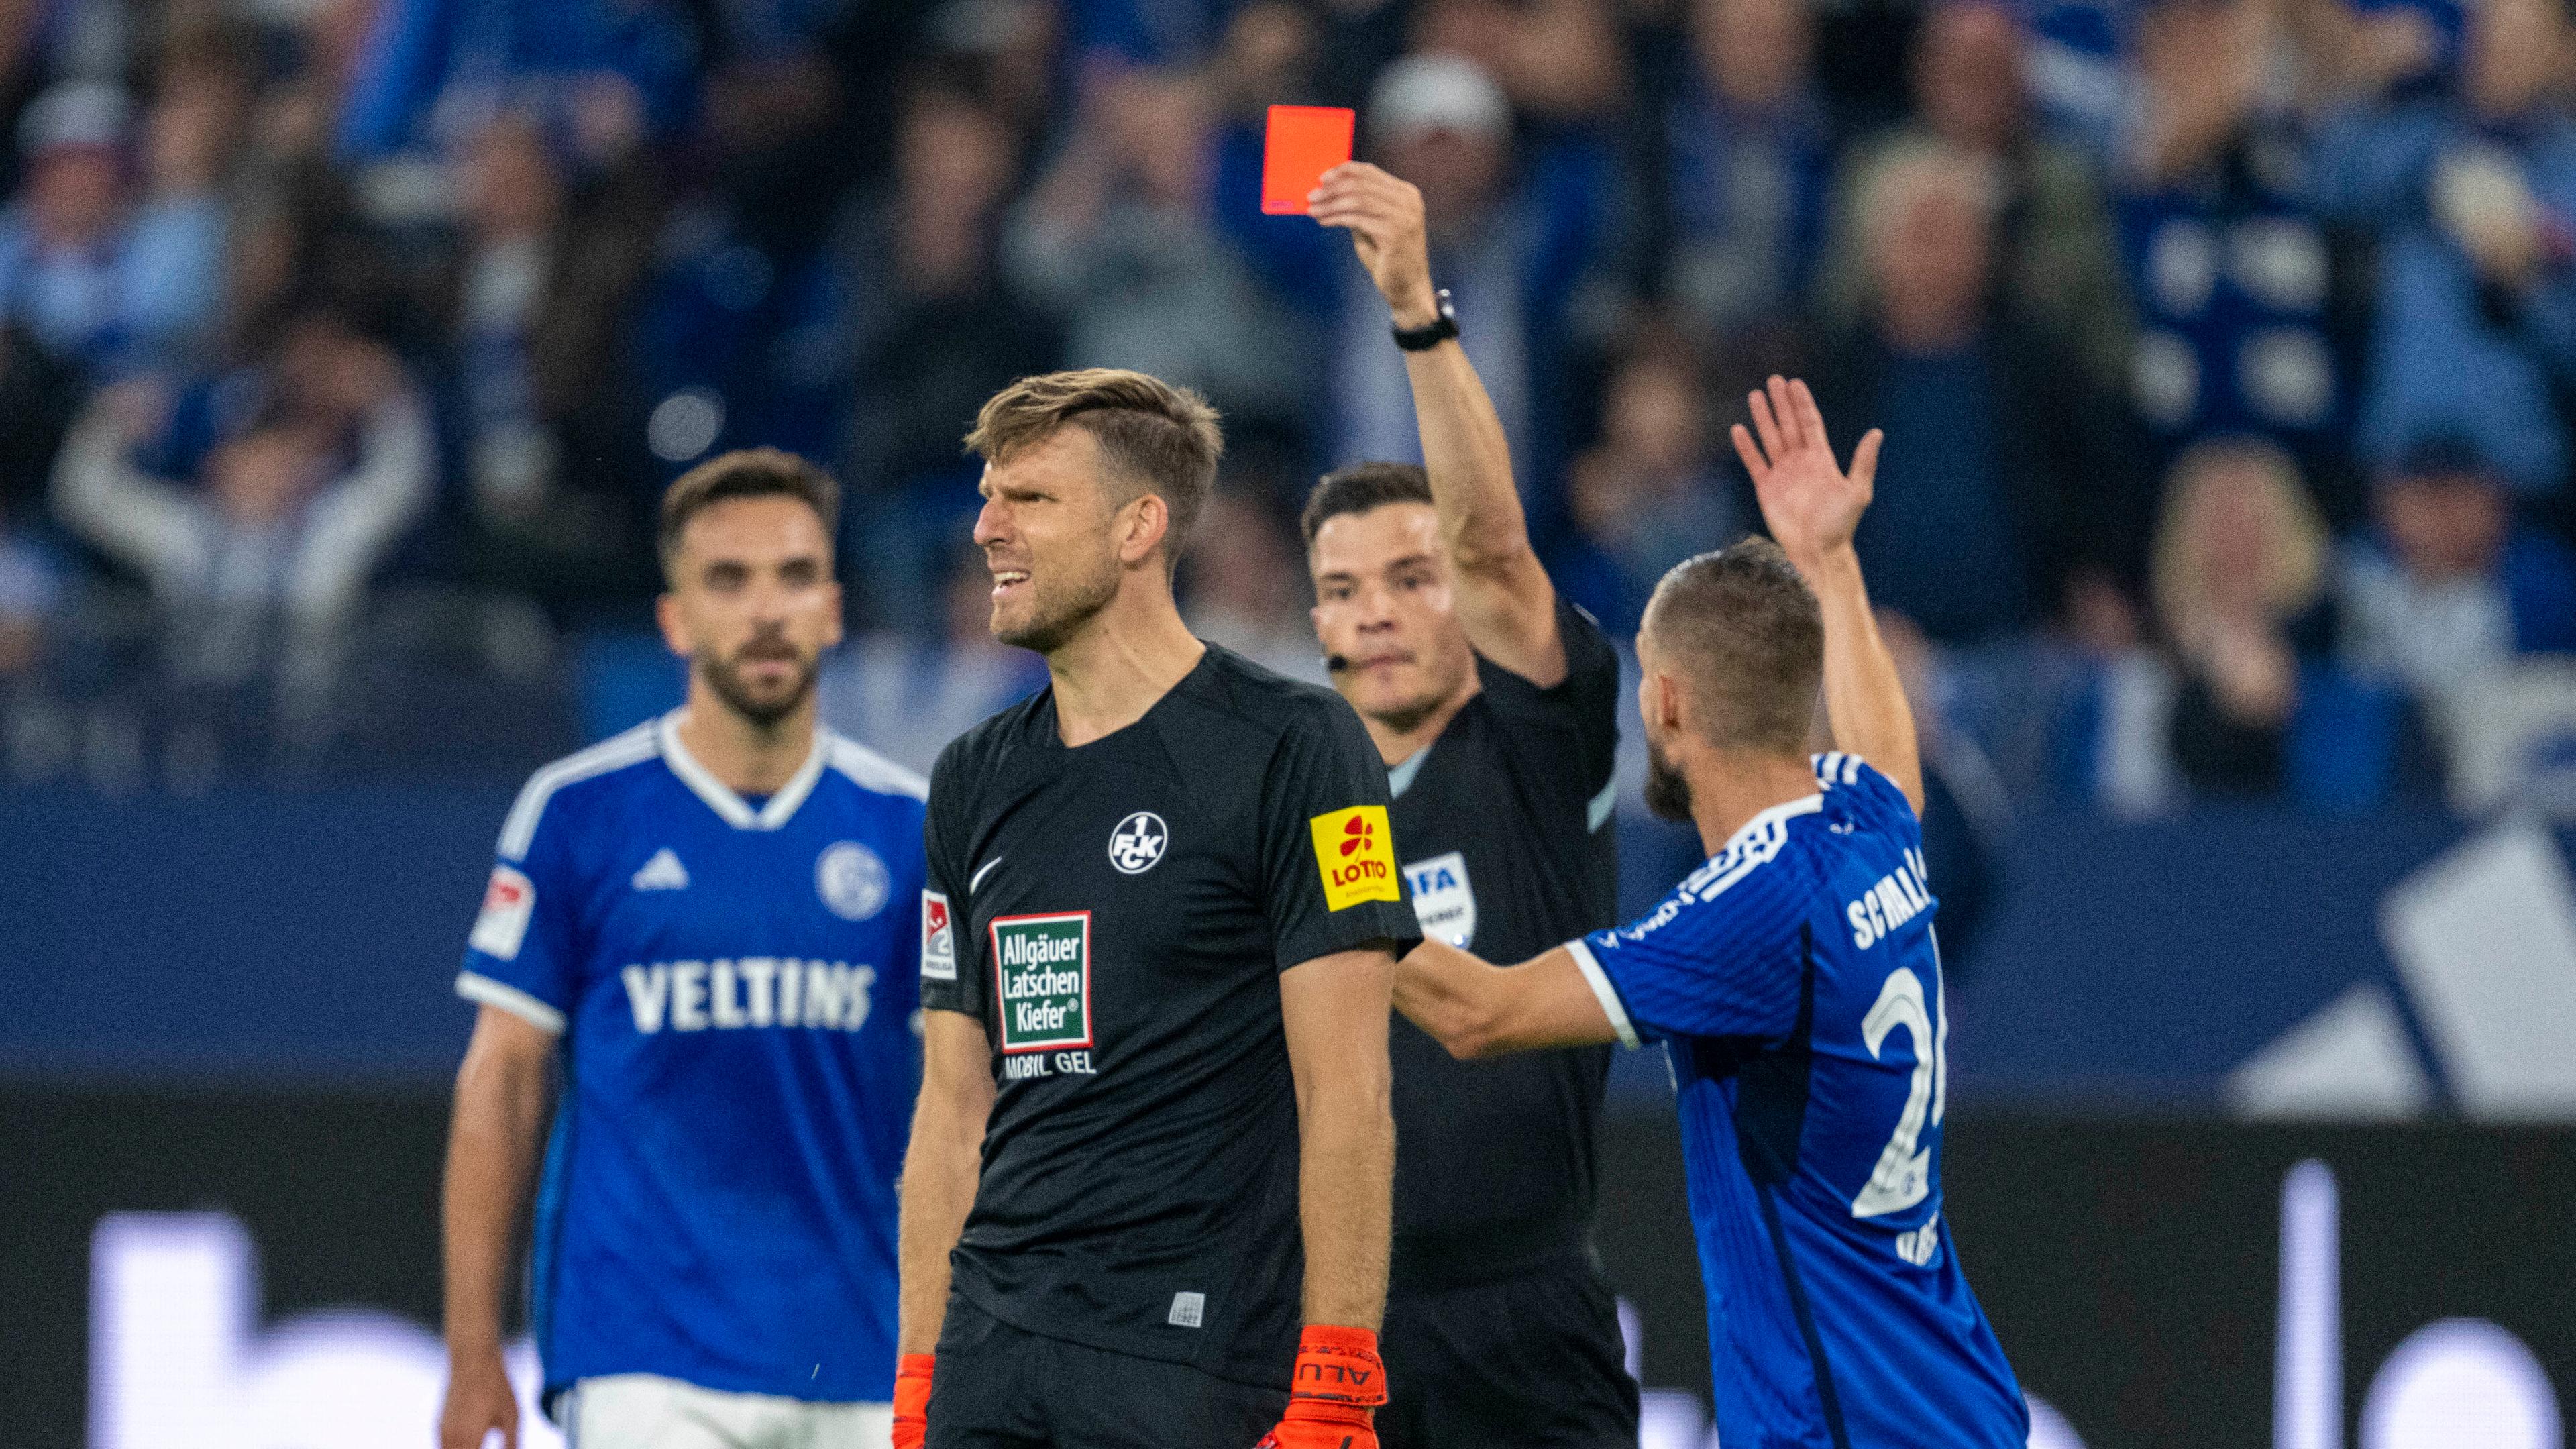 Fußball: FCK-Keeper Luthe wird gegen Schalke vom Platz gestellt.